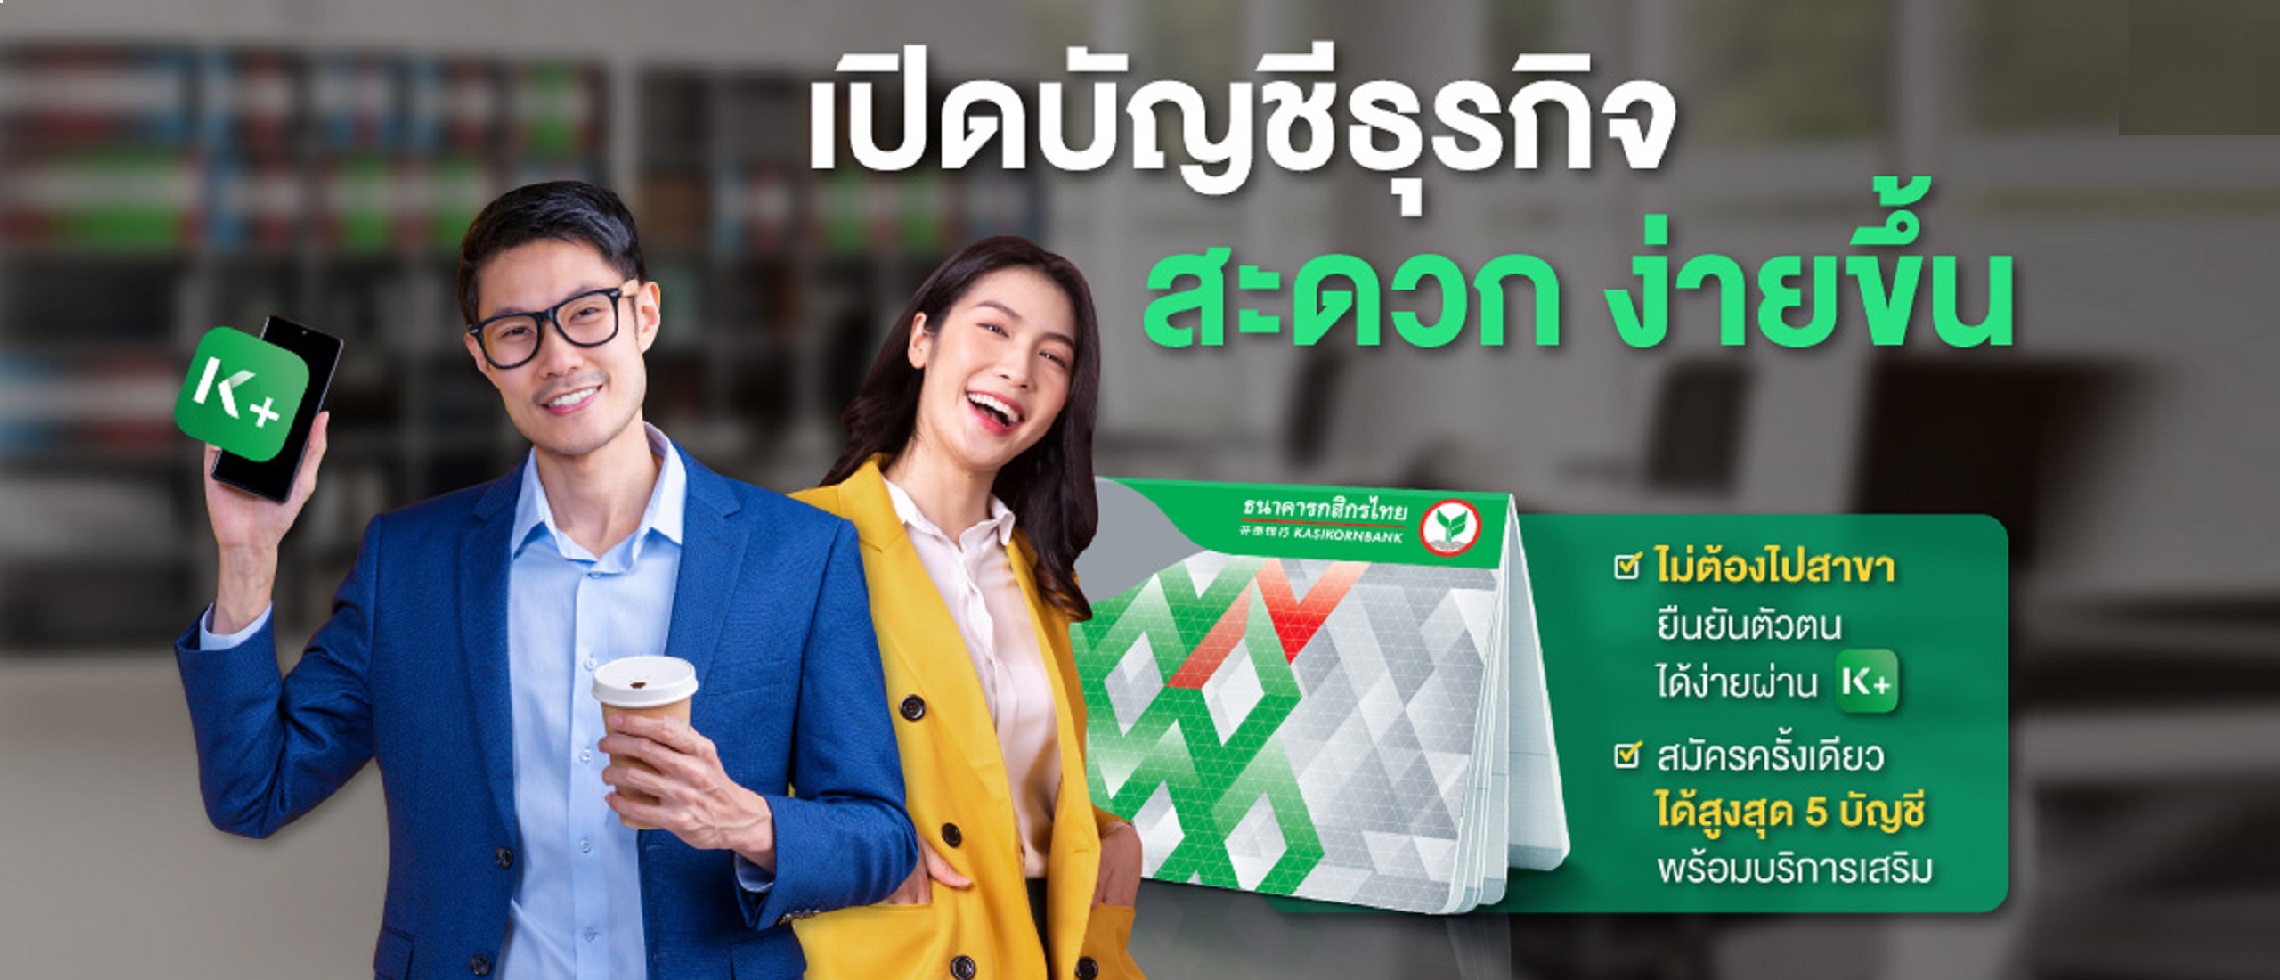 กสิกรไทยเอาใจนักธุรกิจเปิดบัญชีเงินฝากบริษัทง่าย เพียงยืนยันตัวตนผ่าน K  Plus - ธนาคารกสิกรไทย